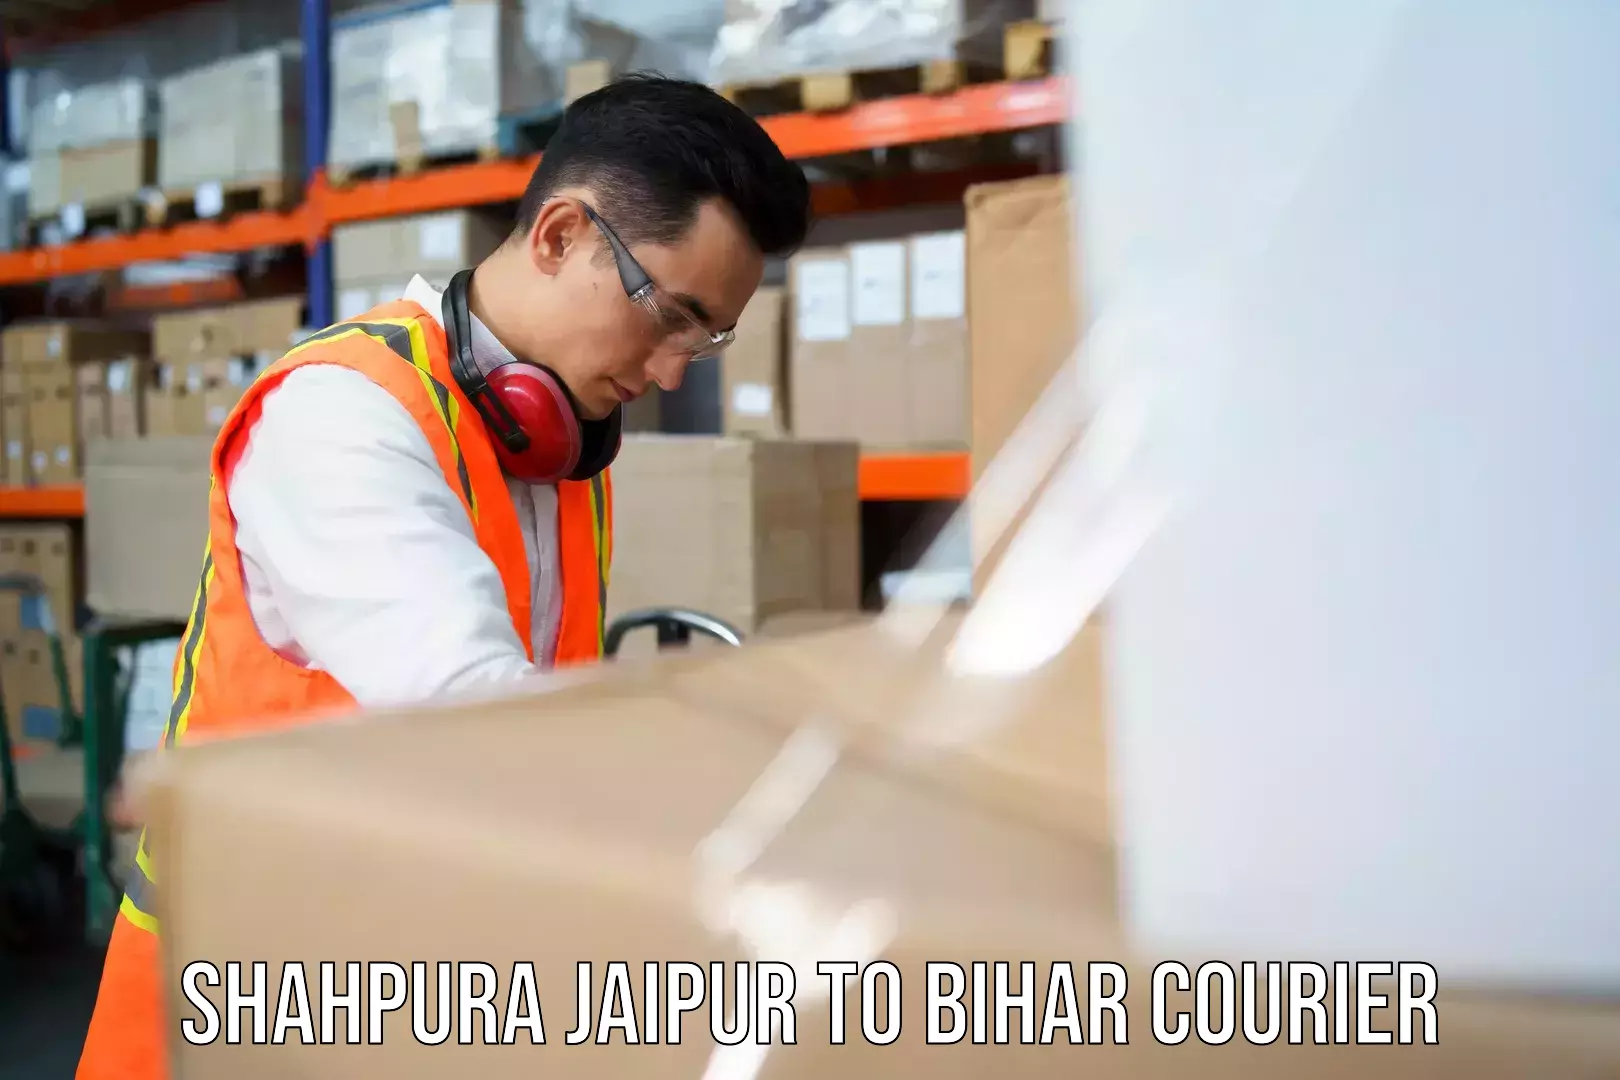 Premium courier services Shahpura Jaipur to Dehri